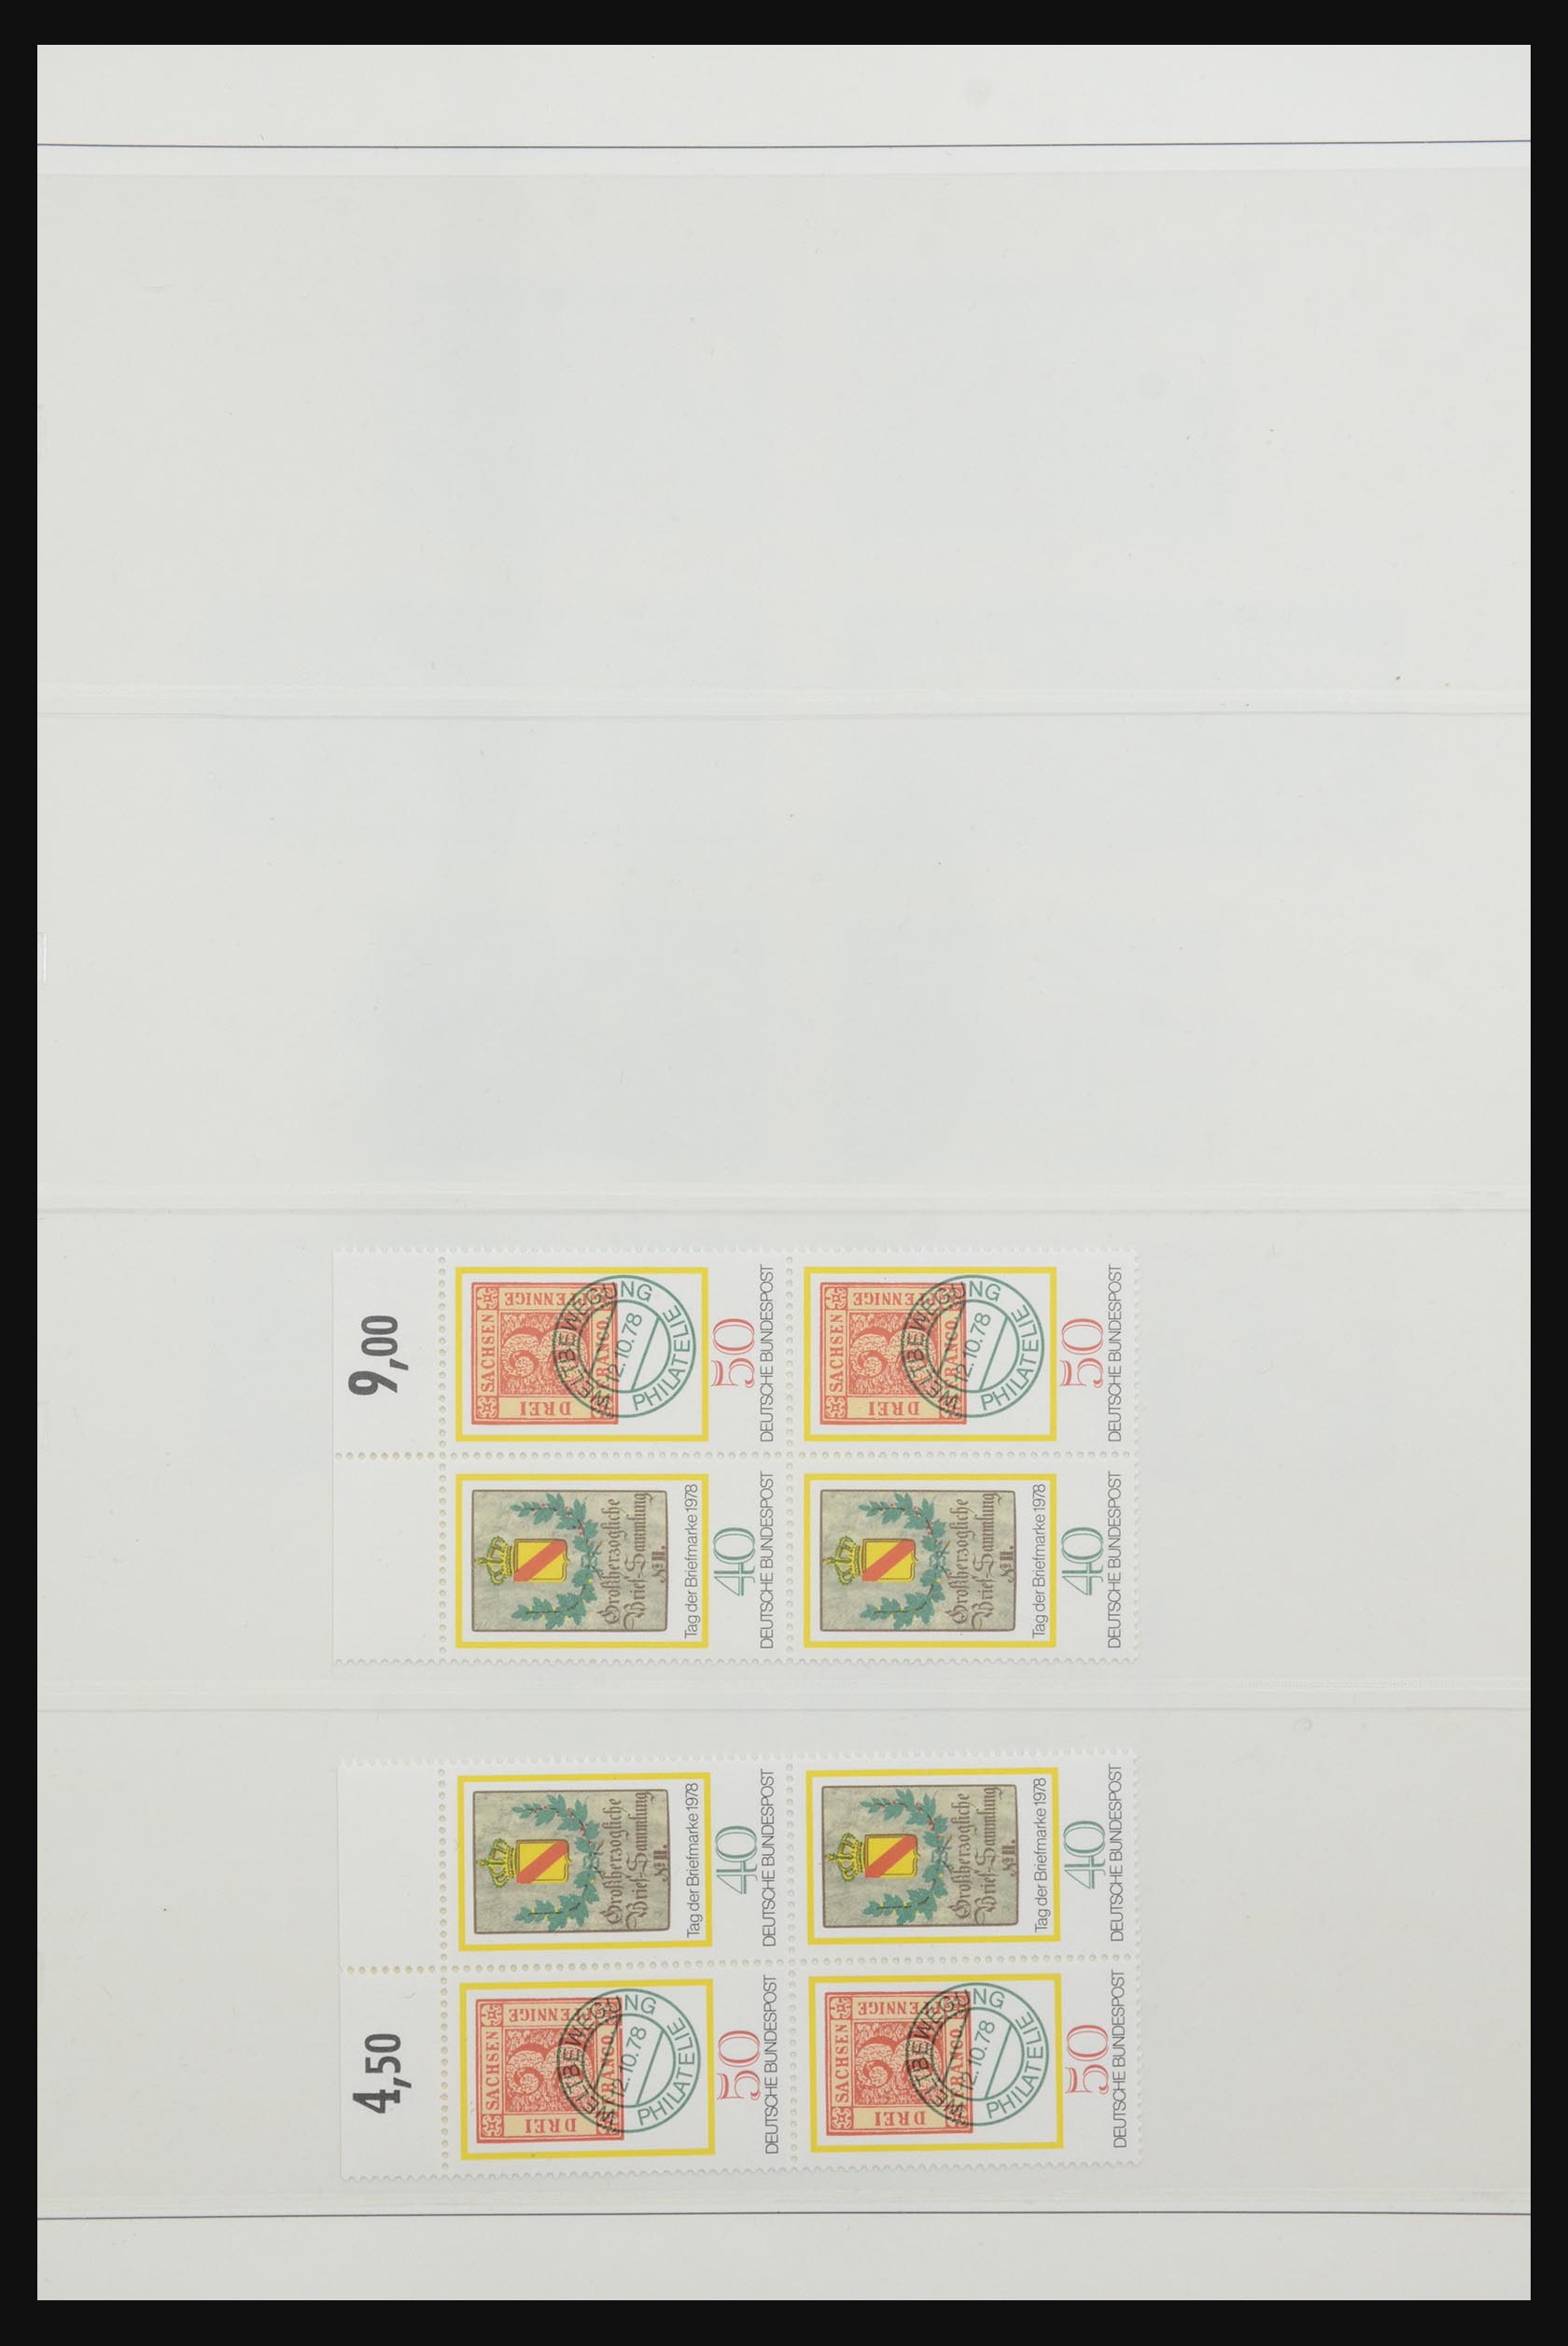 31842 060 - 31842 Bundespost combinations 1951-2003.